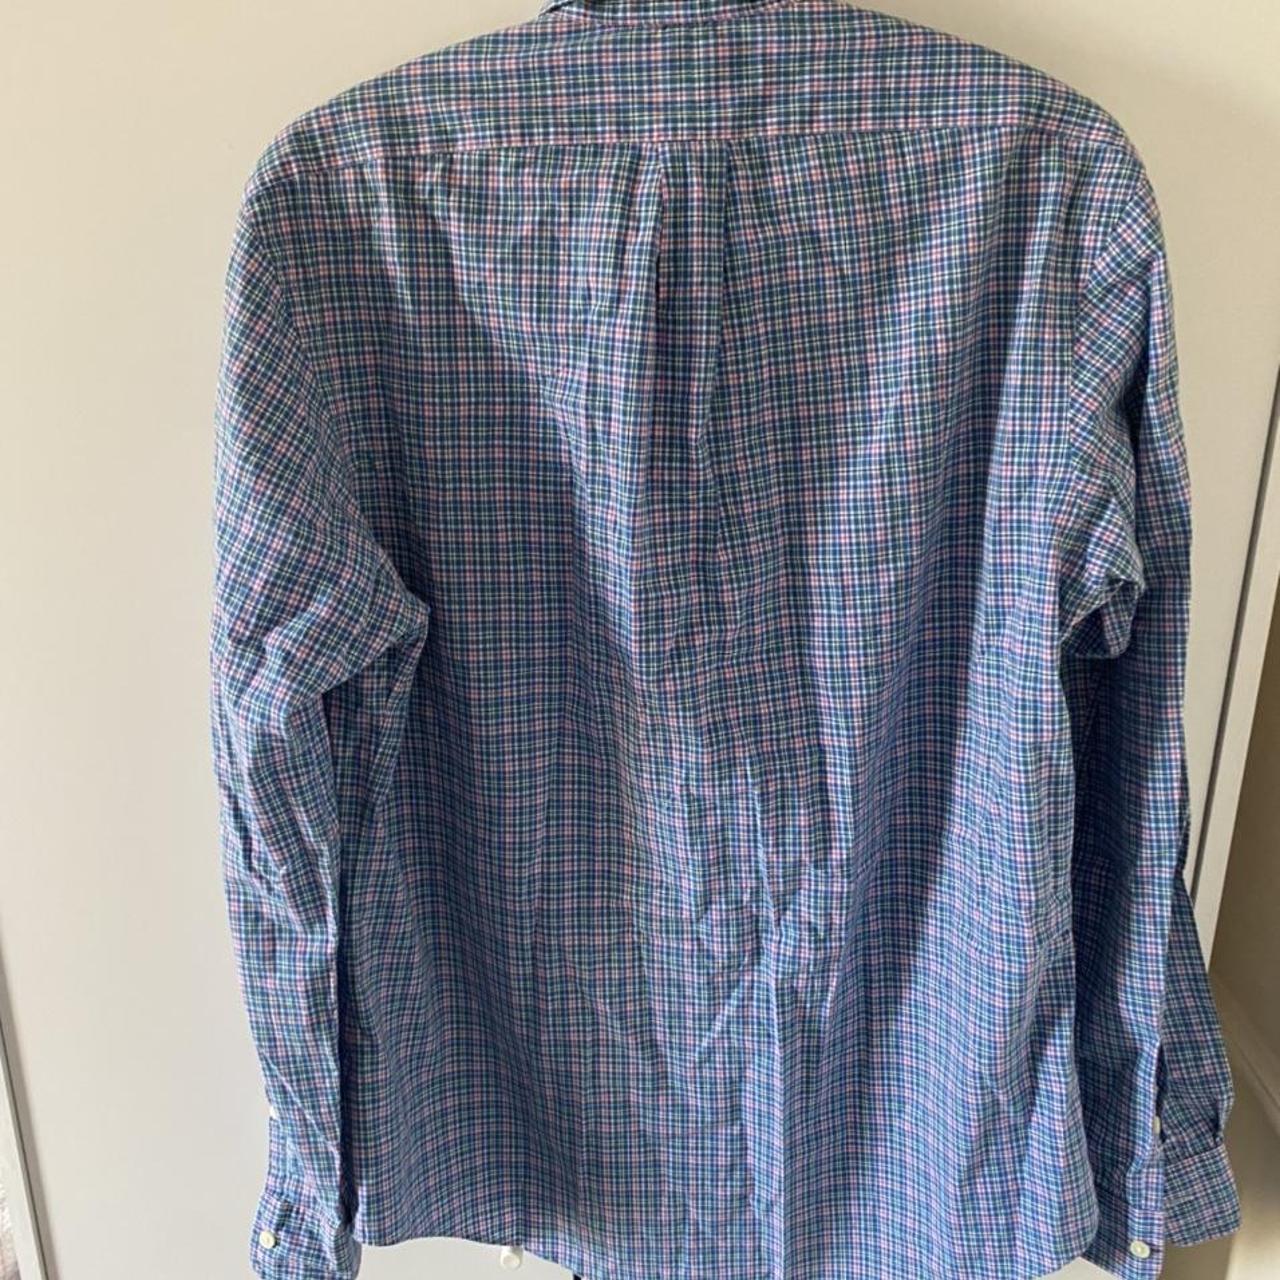 Ralph Lauren shirt Size medium 9/10 condition. - Depop